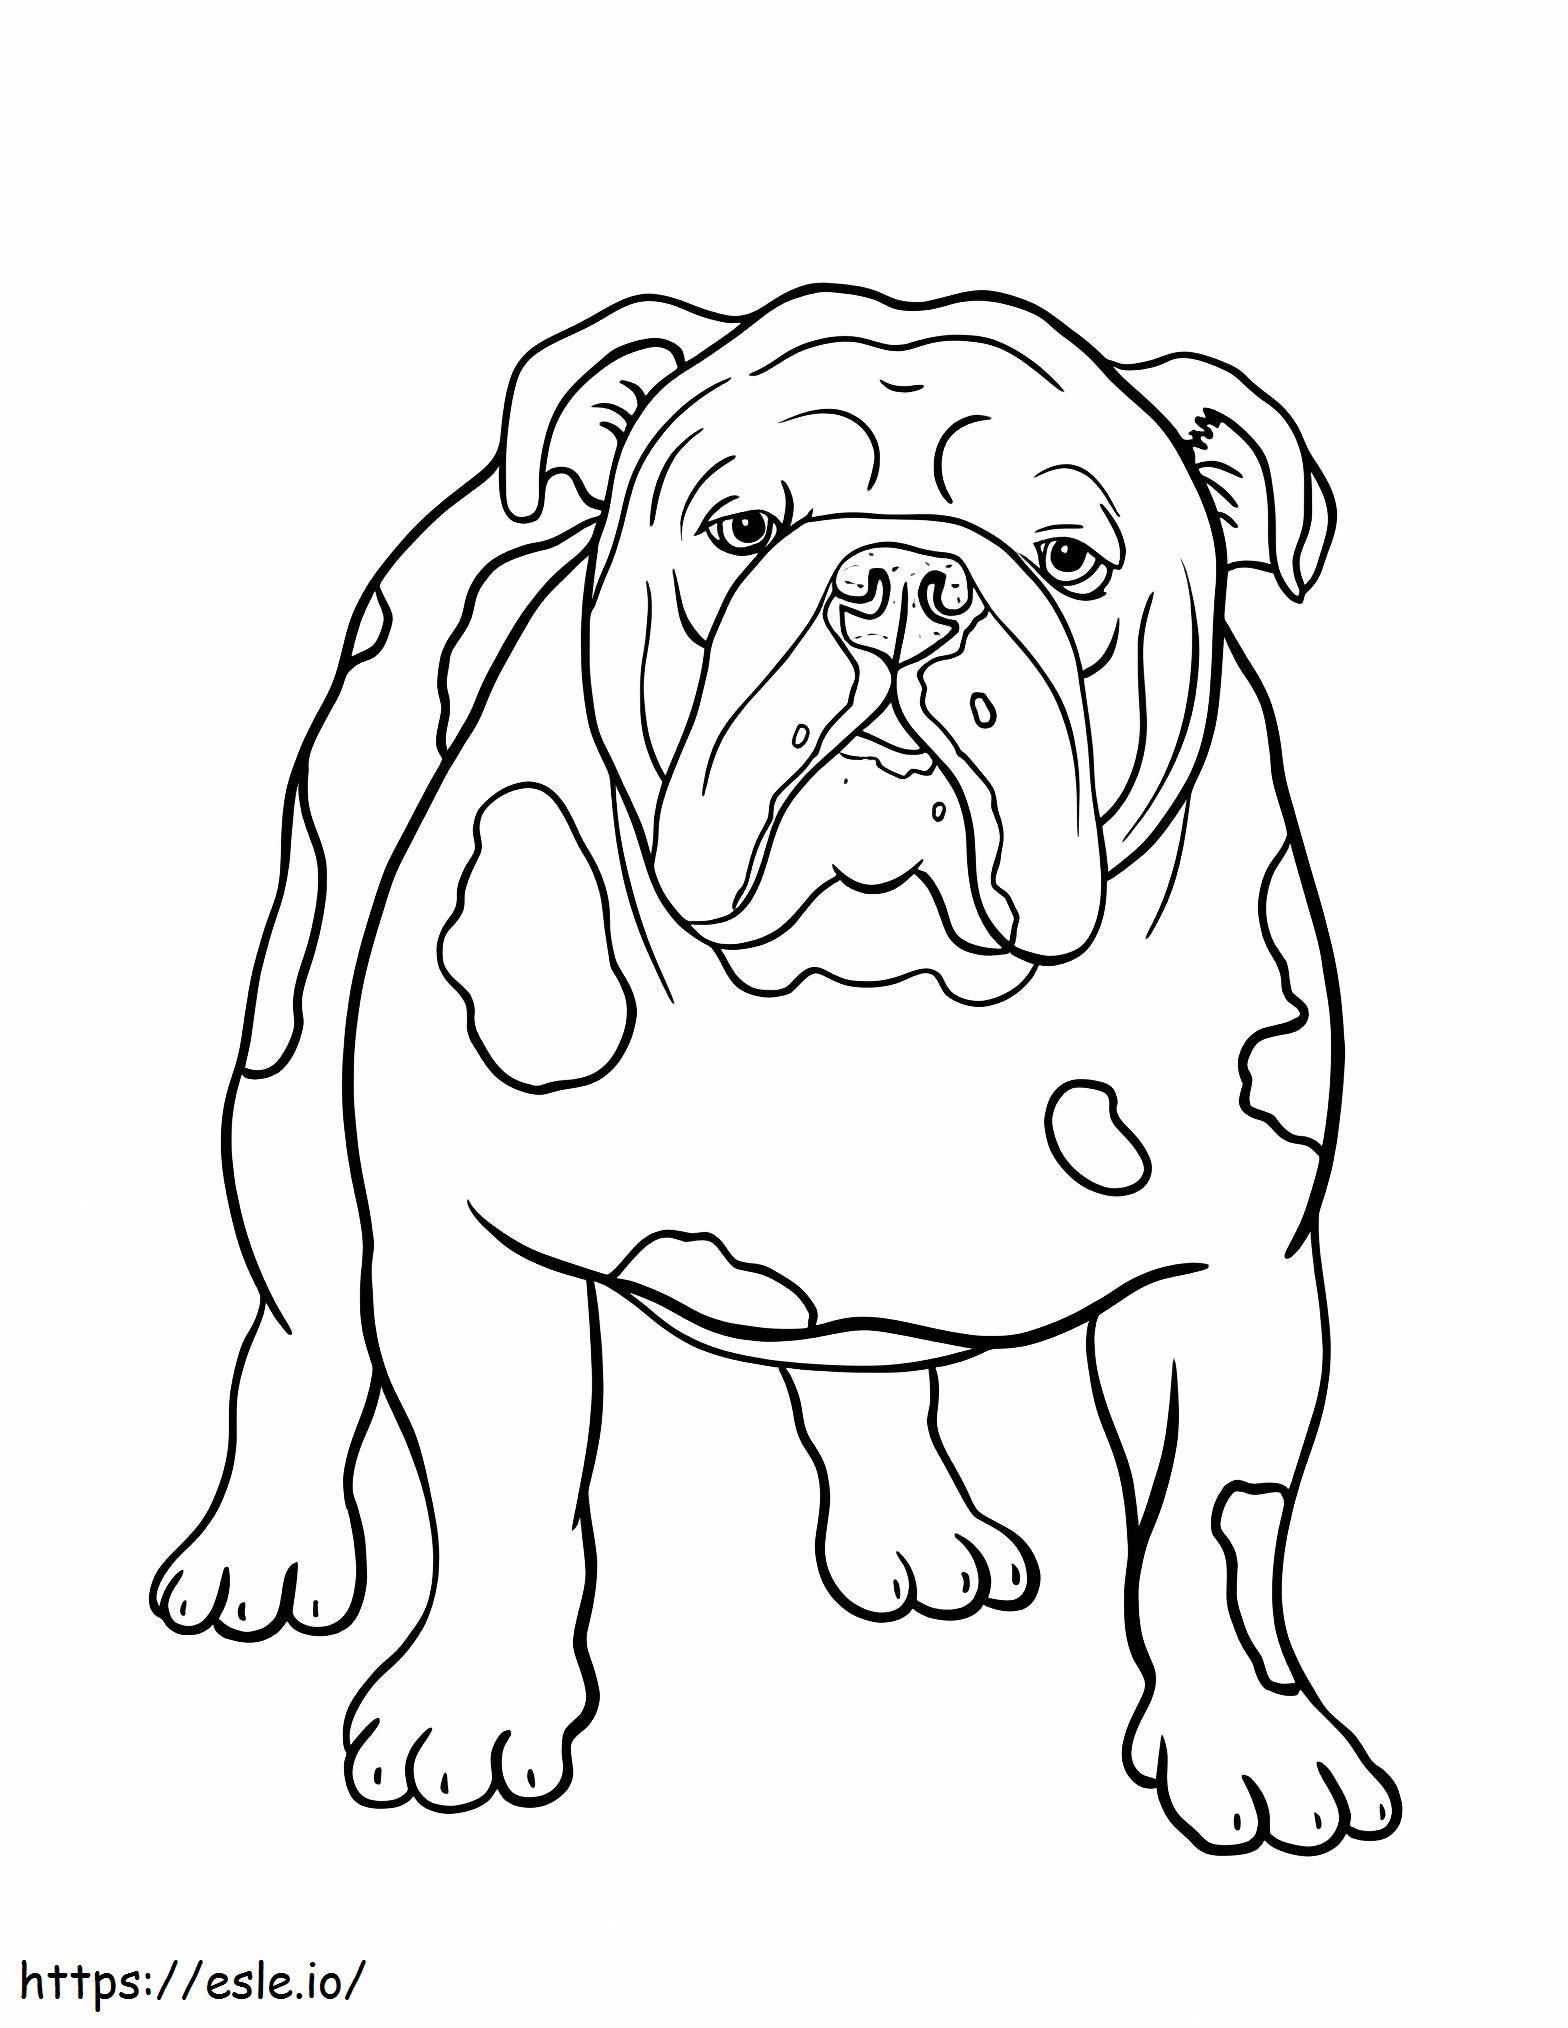 Basic Bulldog coloring page